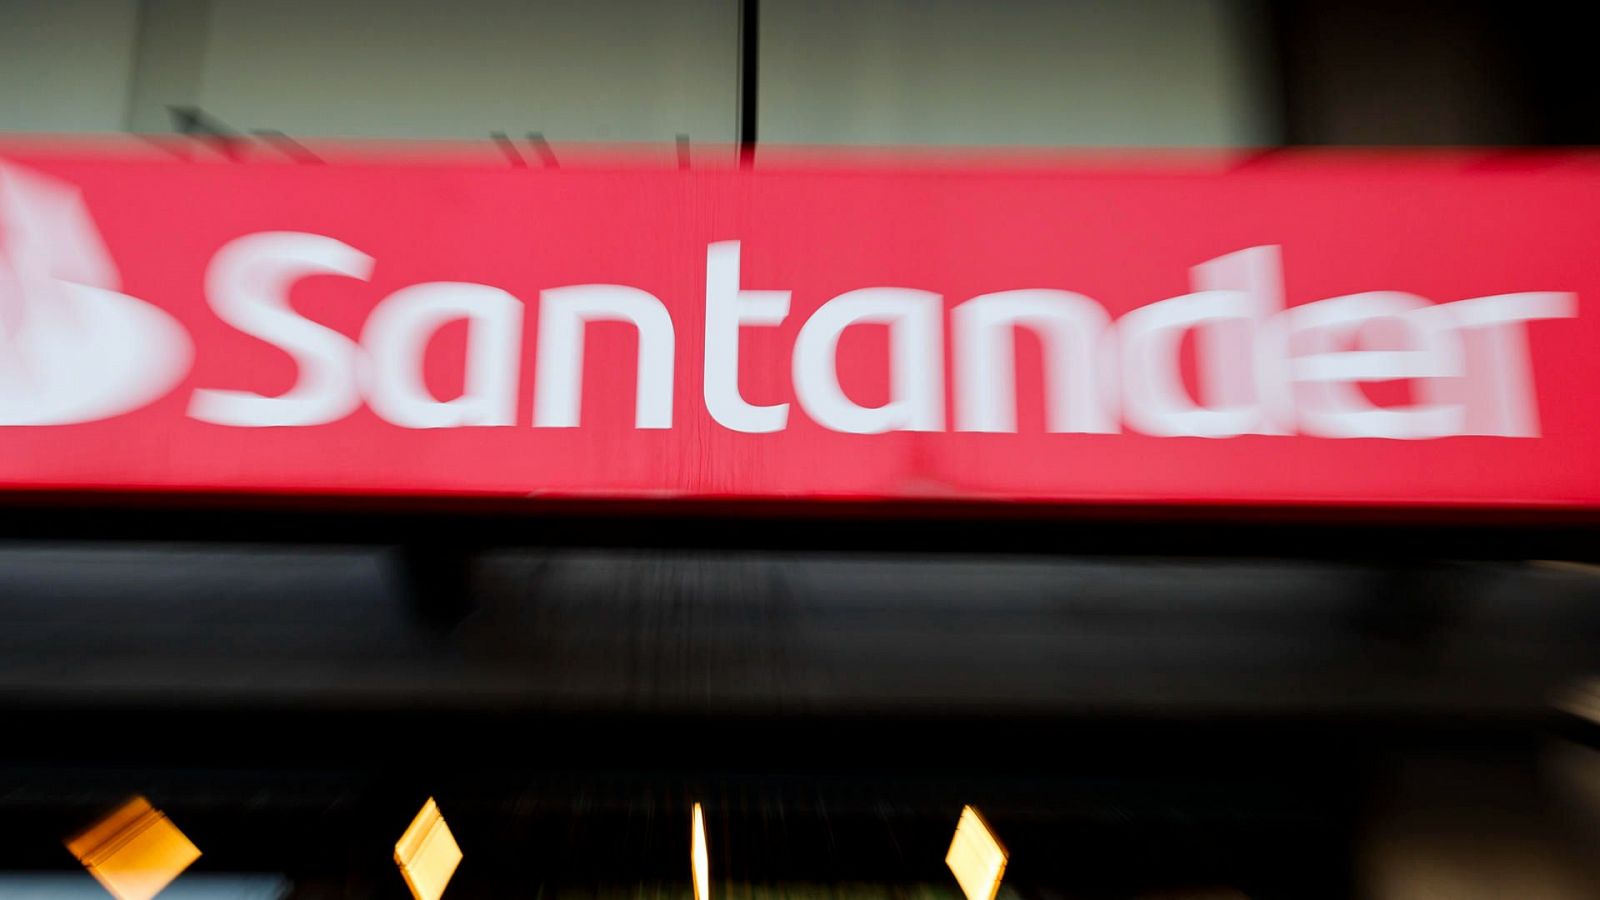 Santander informa de un "acceso no autorizado" a su base de datos que ha afectado a España, Chile y Uruguay